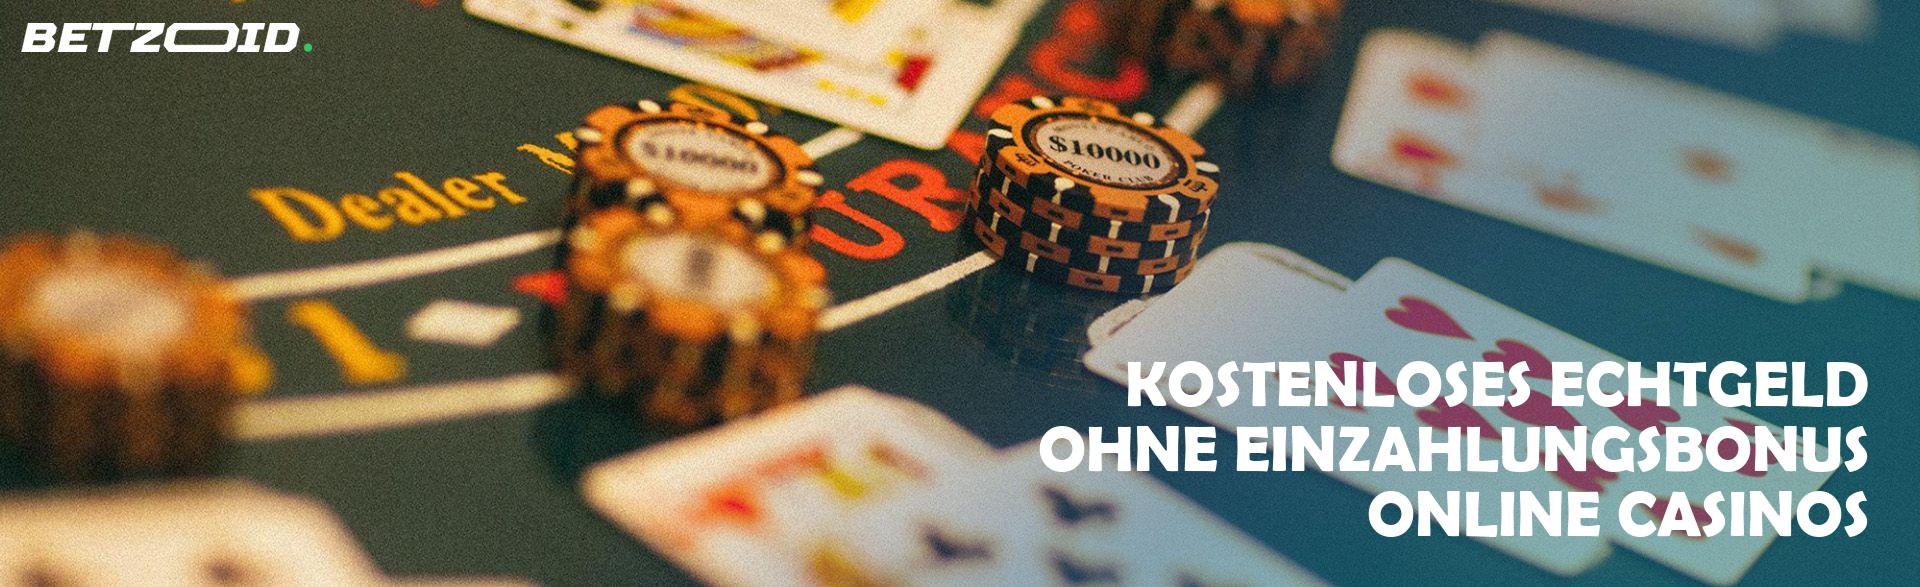 Kostenloses Echtgeld ohne Einzahlungsbonus Online Casinos.